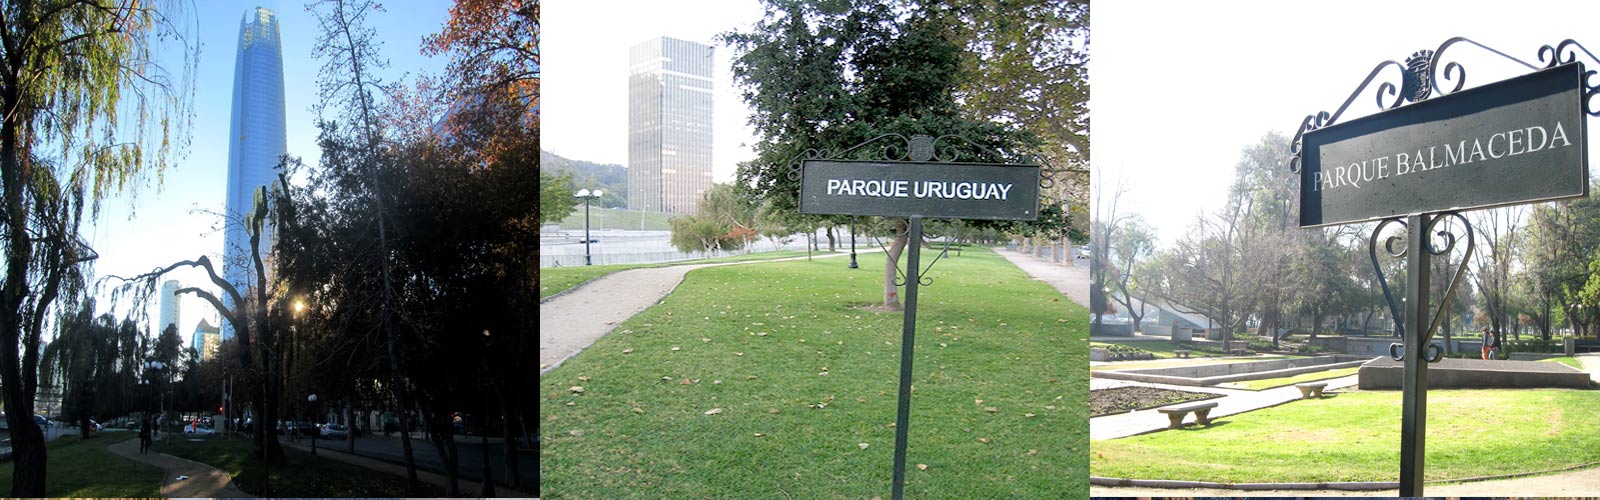 parque_balmaceda_uruguay_02